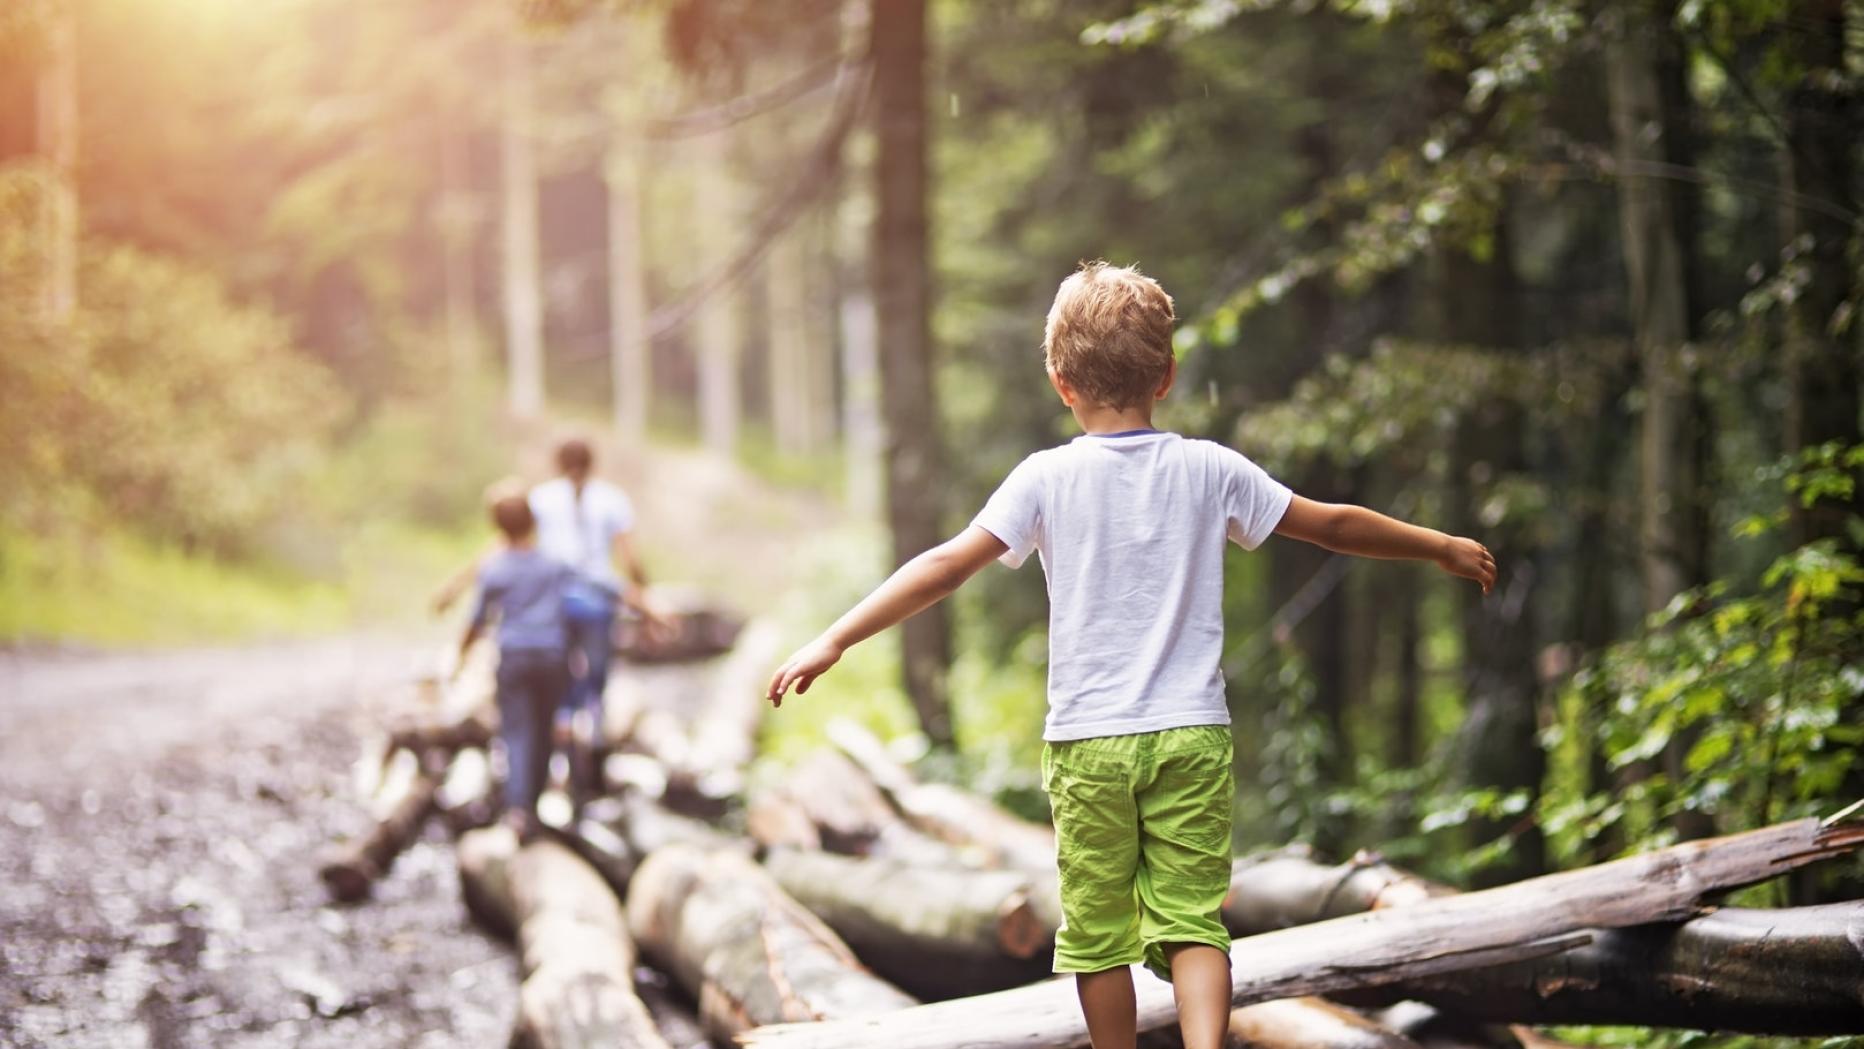 I go to nature. Играющие дети со спины. Мальчик на даче со спины. Играющие дети возле леса. «Безопасность детей в природе фото.